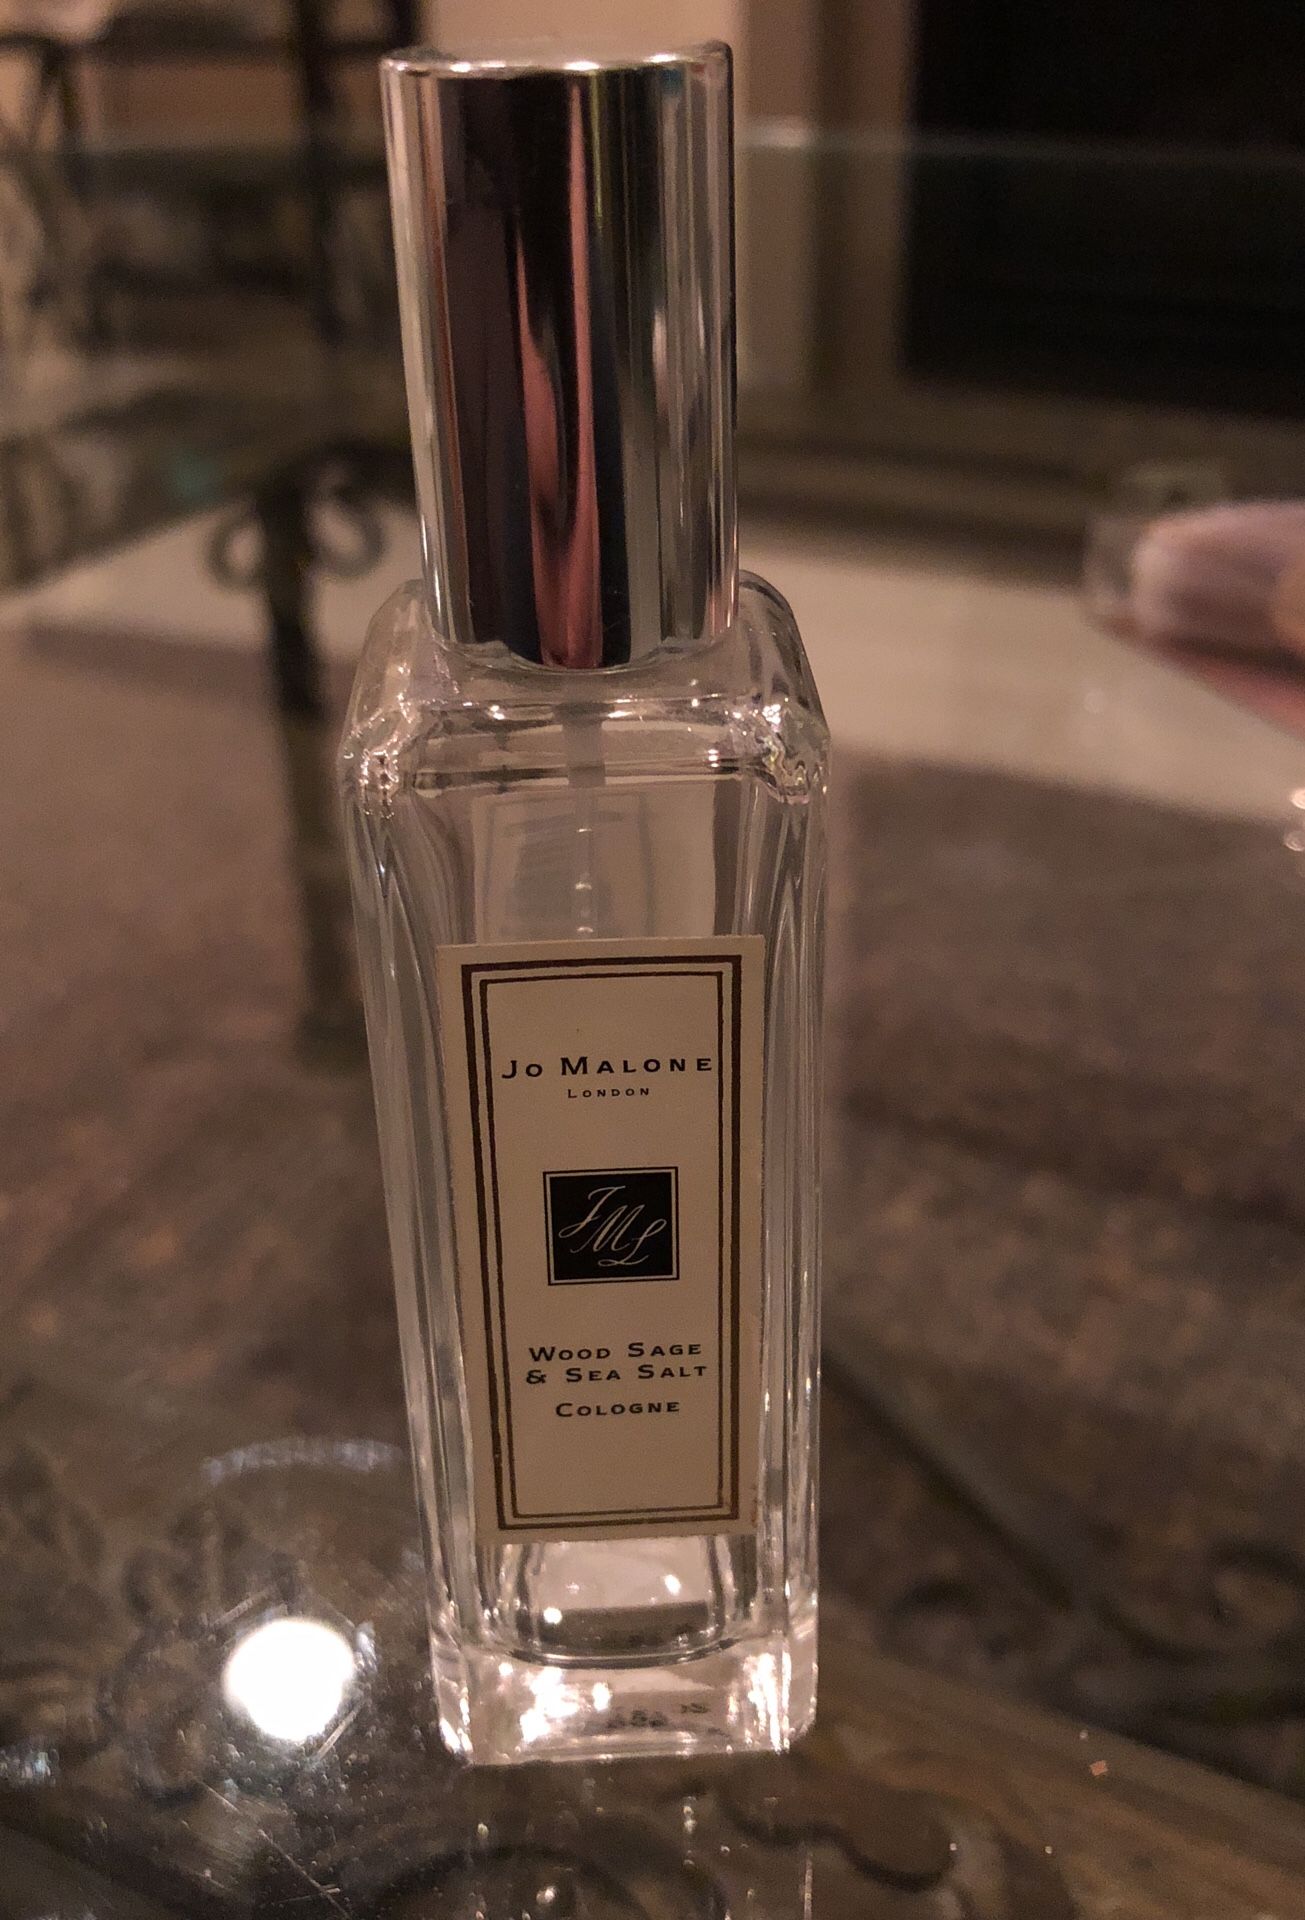 Jo Malone Perfume Bottle, Bottle Only!